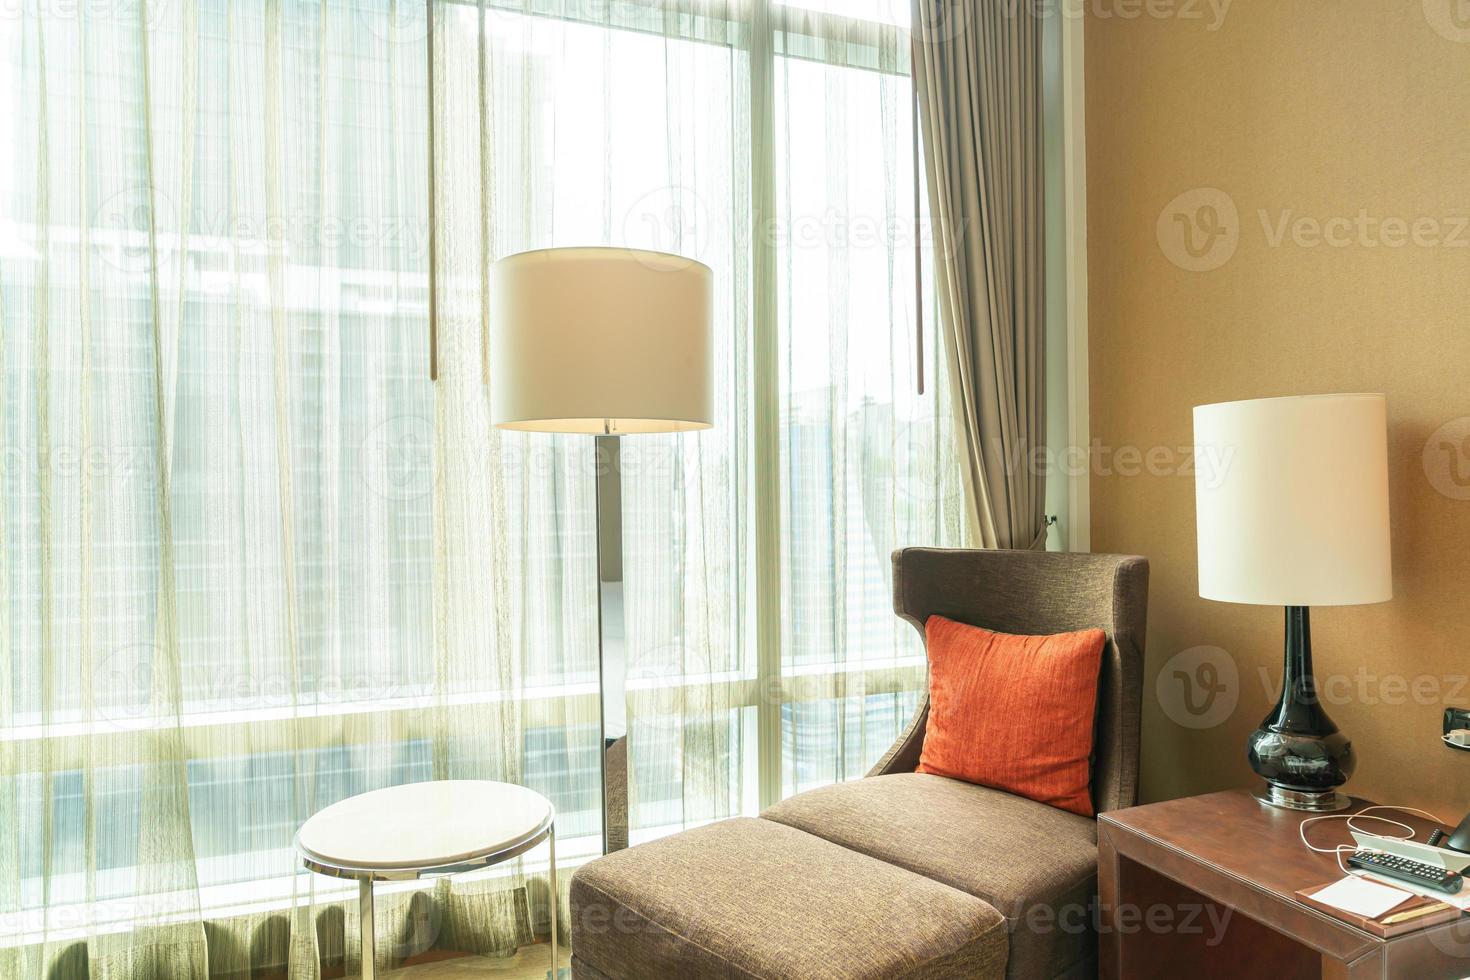 linda decoração de travesseiro no sofá-cama perto da janela com luz do sol foto